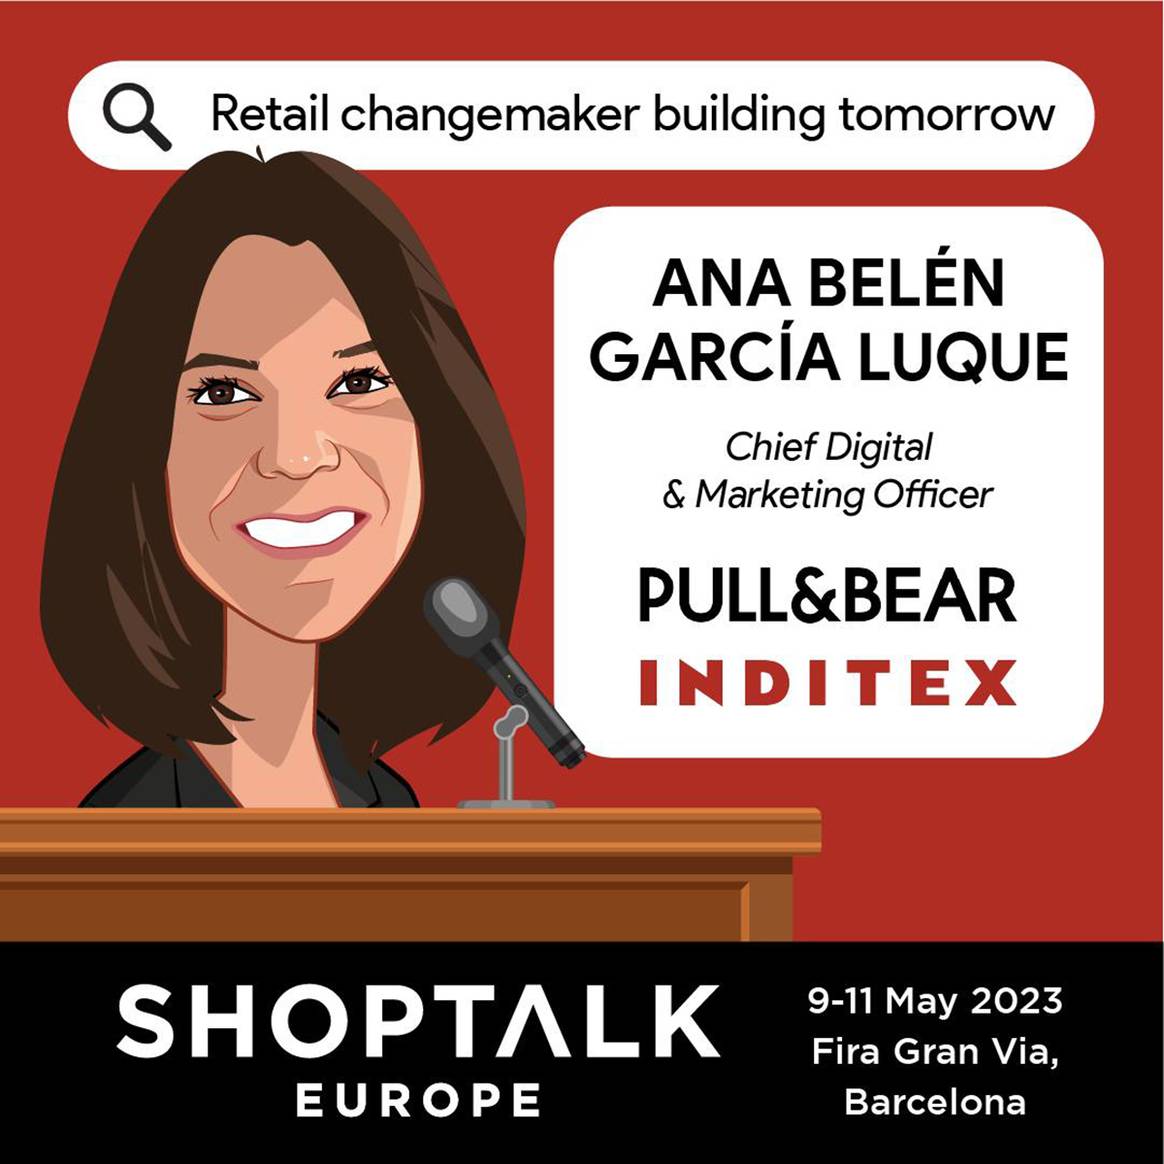 Photo Credits: Cartel de las ponencias de Shoptalk Europe para su edición en Barcelona de mayo de 2023. Shoptalk.